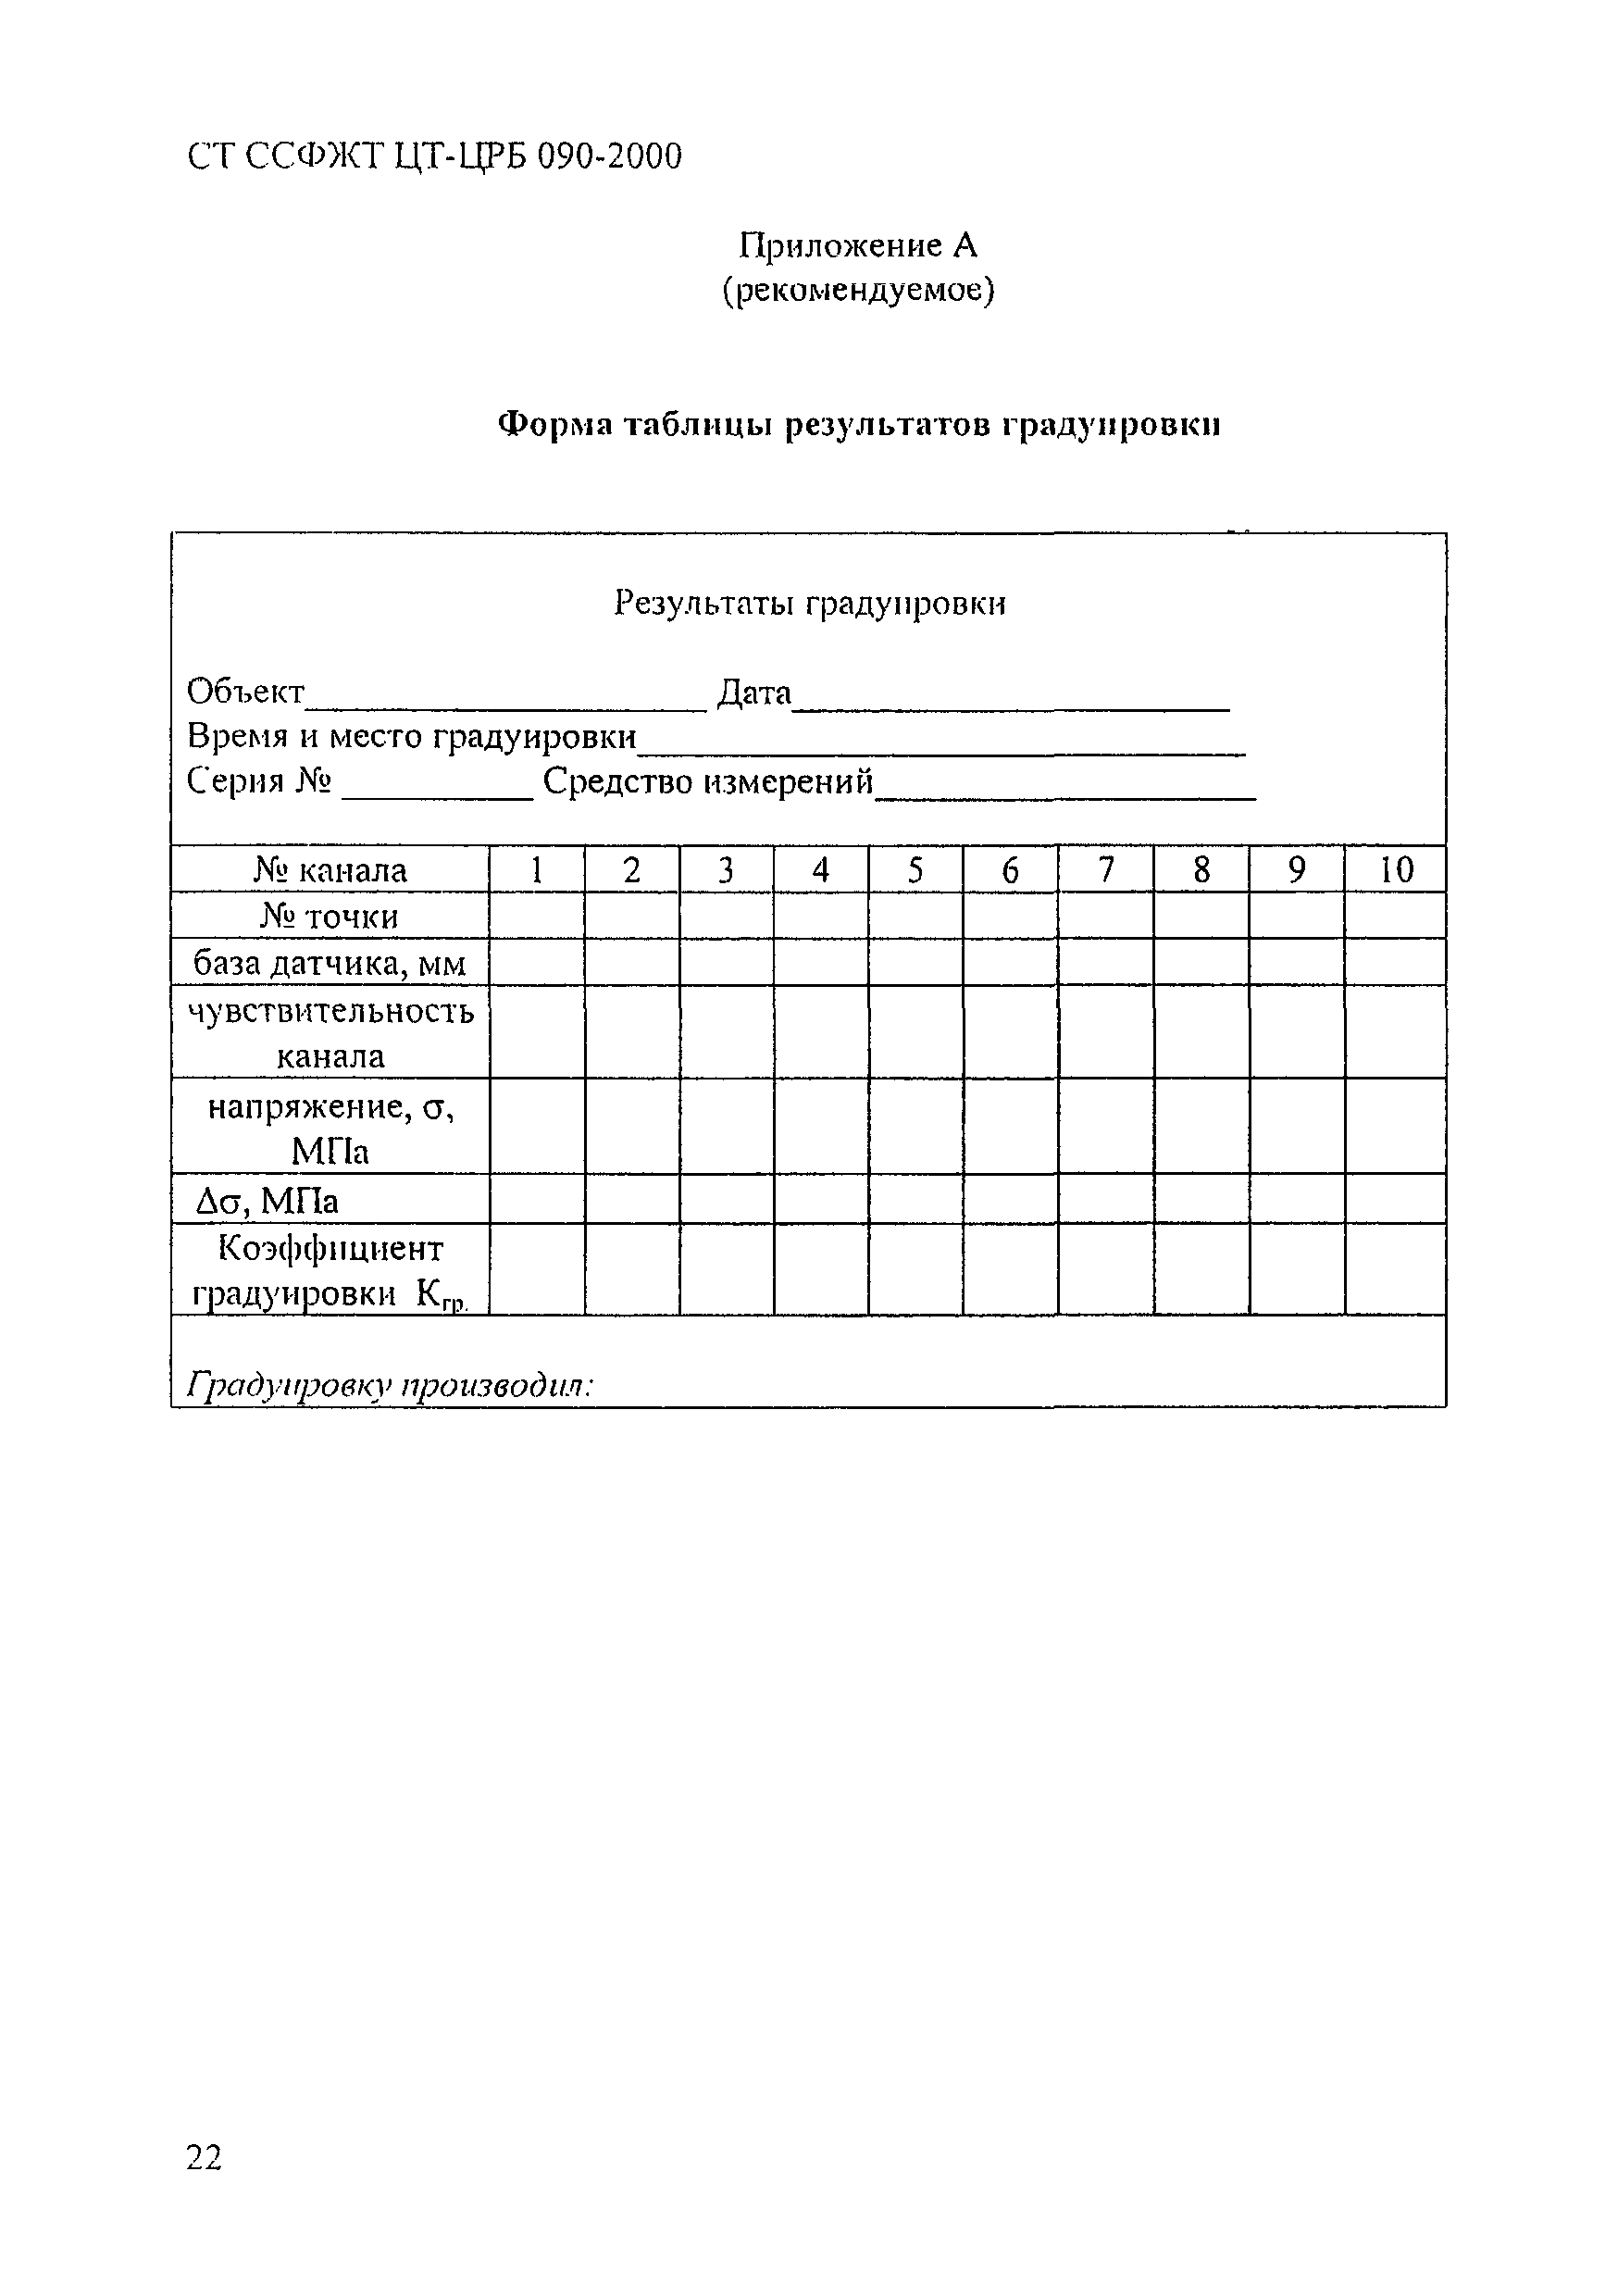 СТ ССФЖТ ЦТ-РБ 090-2000